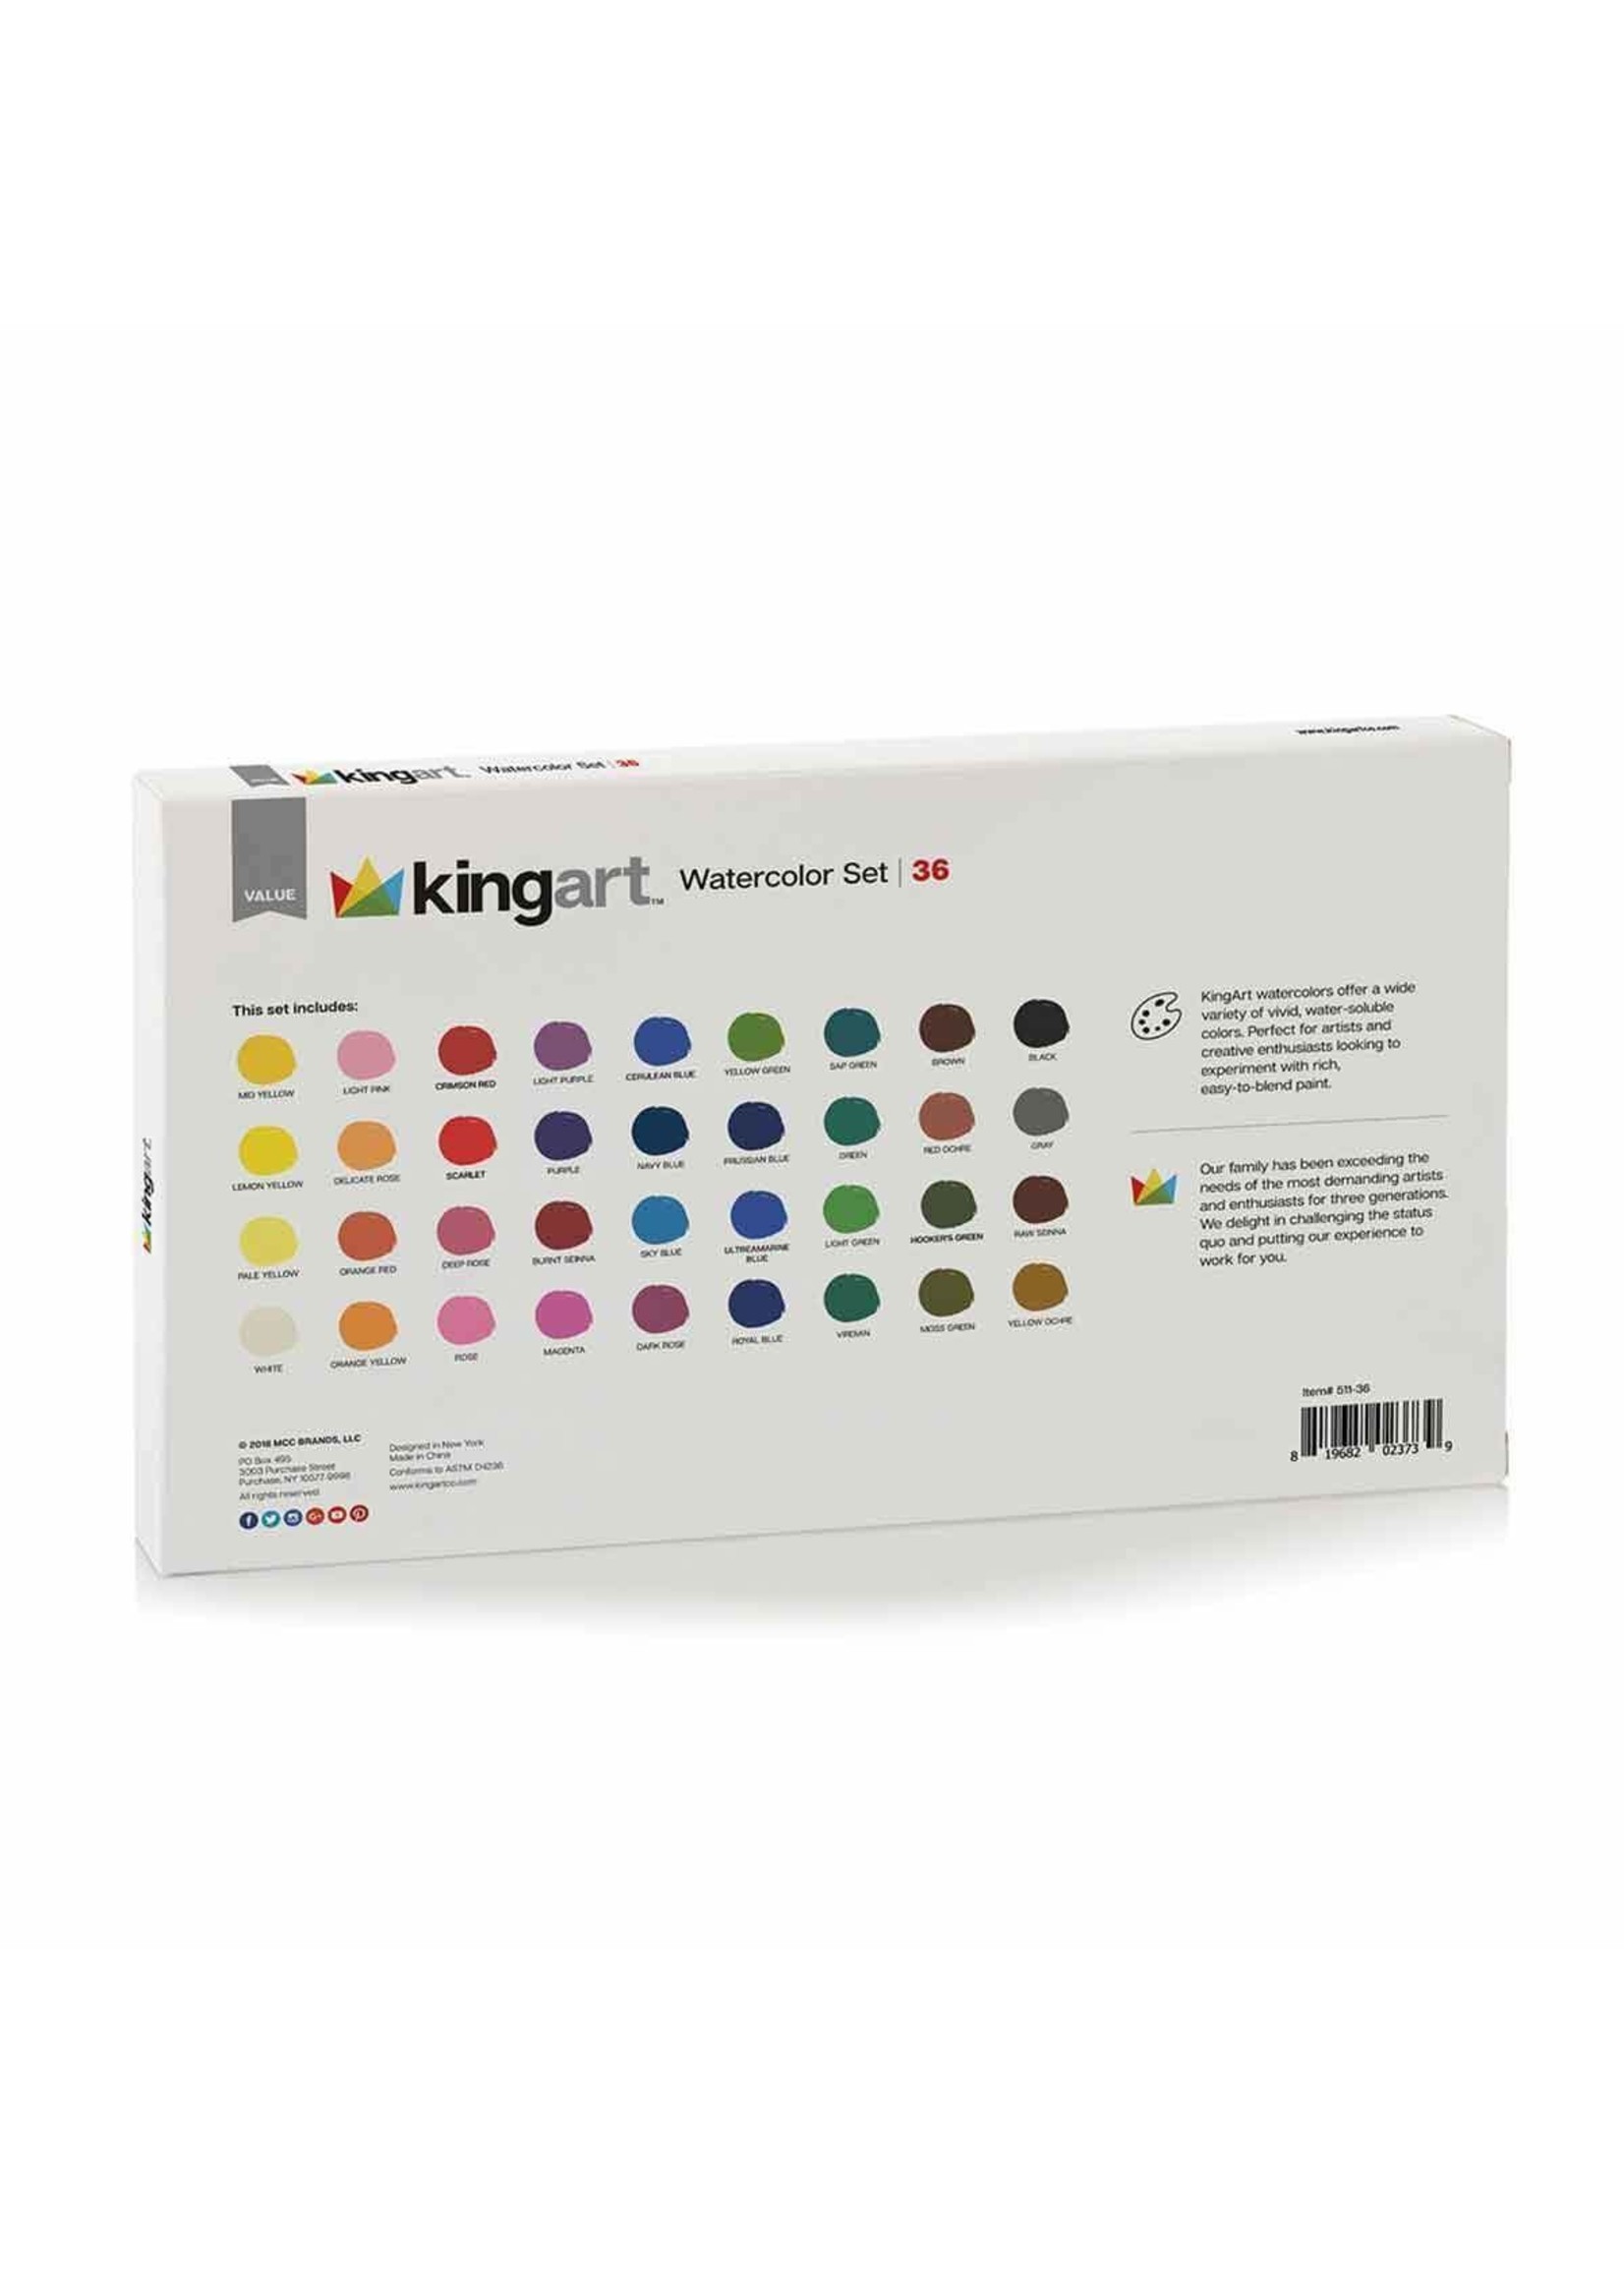 Kingart Watercolor Pan Set - 36 Unique Colors